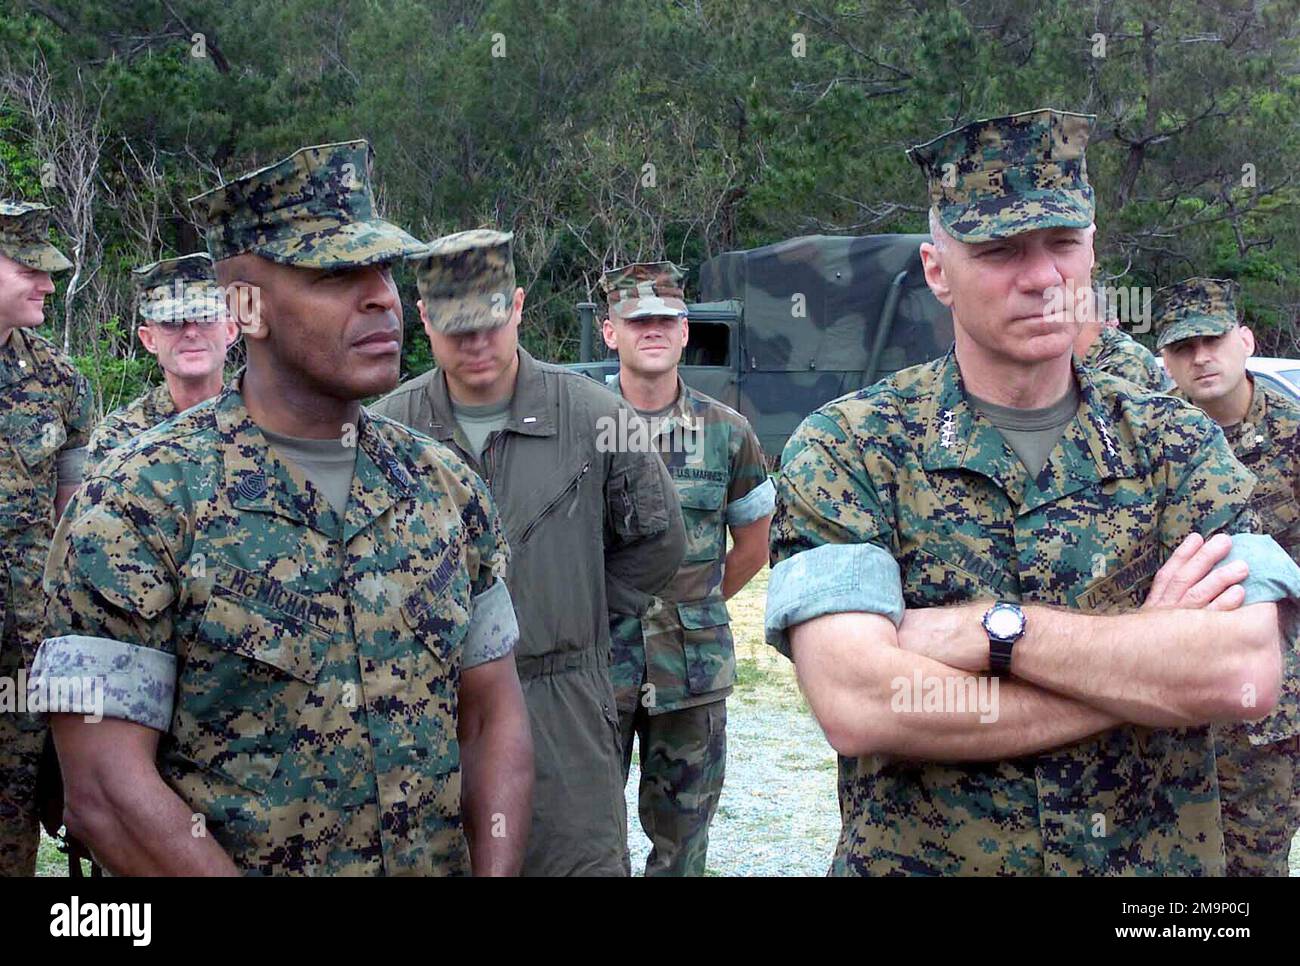 El Sargento Mayor del Cuerpo de Marines Alford McMichael, (izquierda), y el General (GEN) Michael W. Hagee, (derecha), Comandante del Cuerpo de Marines (CMC) escucharon una sesión informativa durante una visita al campo 10 en Fuel Pits LZ ubicado en Camp Schwab, Okinawa, Japón. EL GENERAL Hagee visitó la III Fuerza Expedicionaria de Marines (MEF) por primera vez como CMC. Durante su visita recorrerá las bases de la Marina ubicadas en Okinawa, Japón. Base: Campamento Schwab País: Japón (JPN) Escena Comando mayor mostrado: HQMC Foto de stock